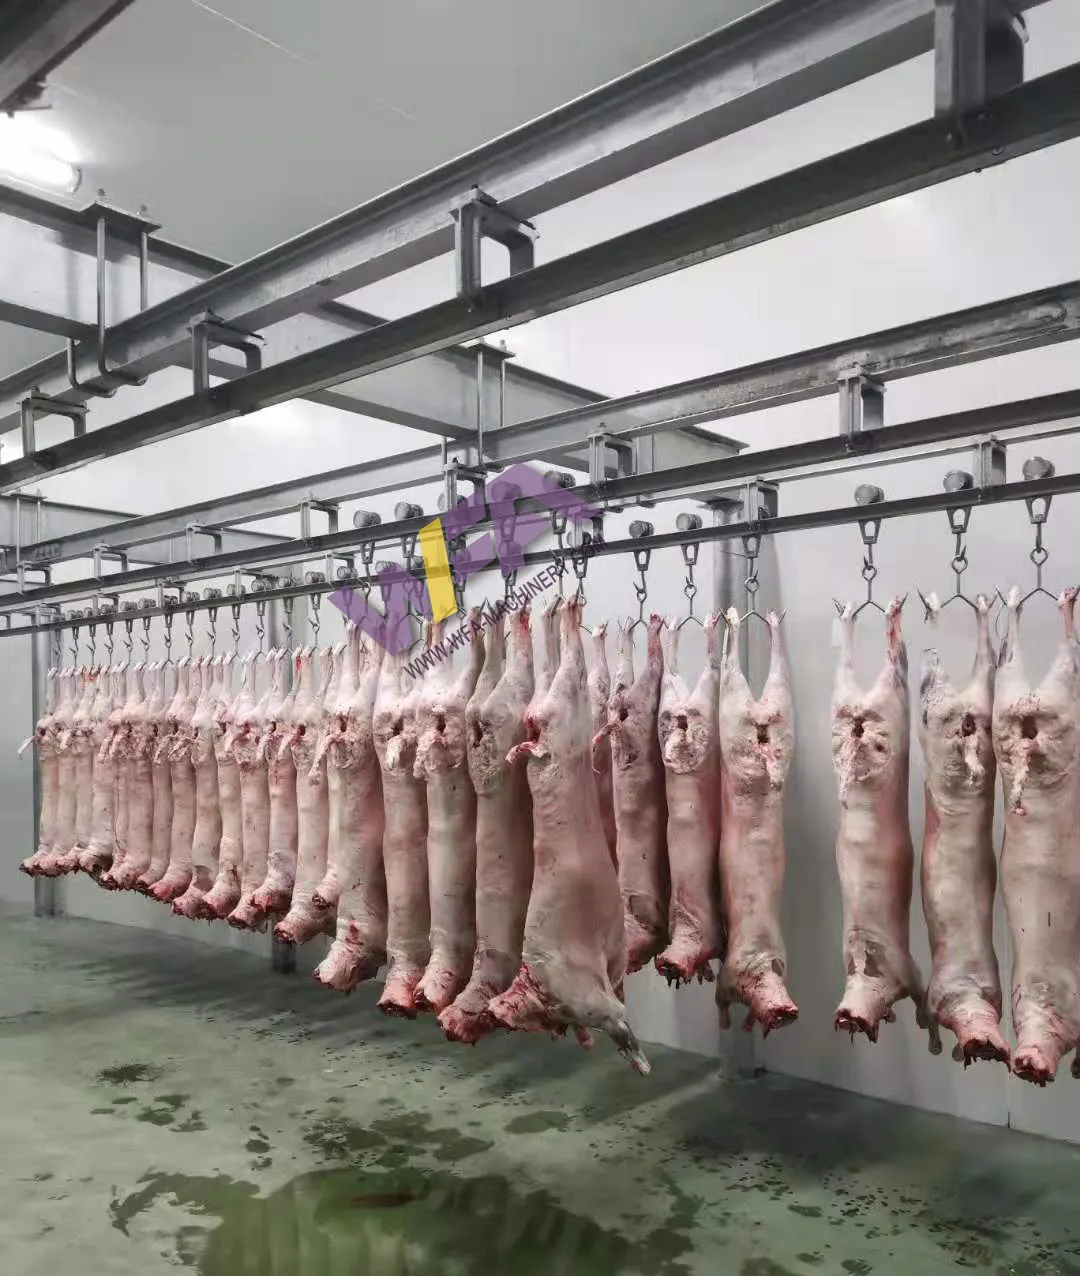 مشروع تسليم المفتاح كامل ذبح الأغنام الحلال لحم الماعز مع آلة جزارة